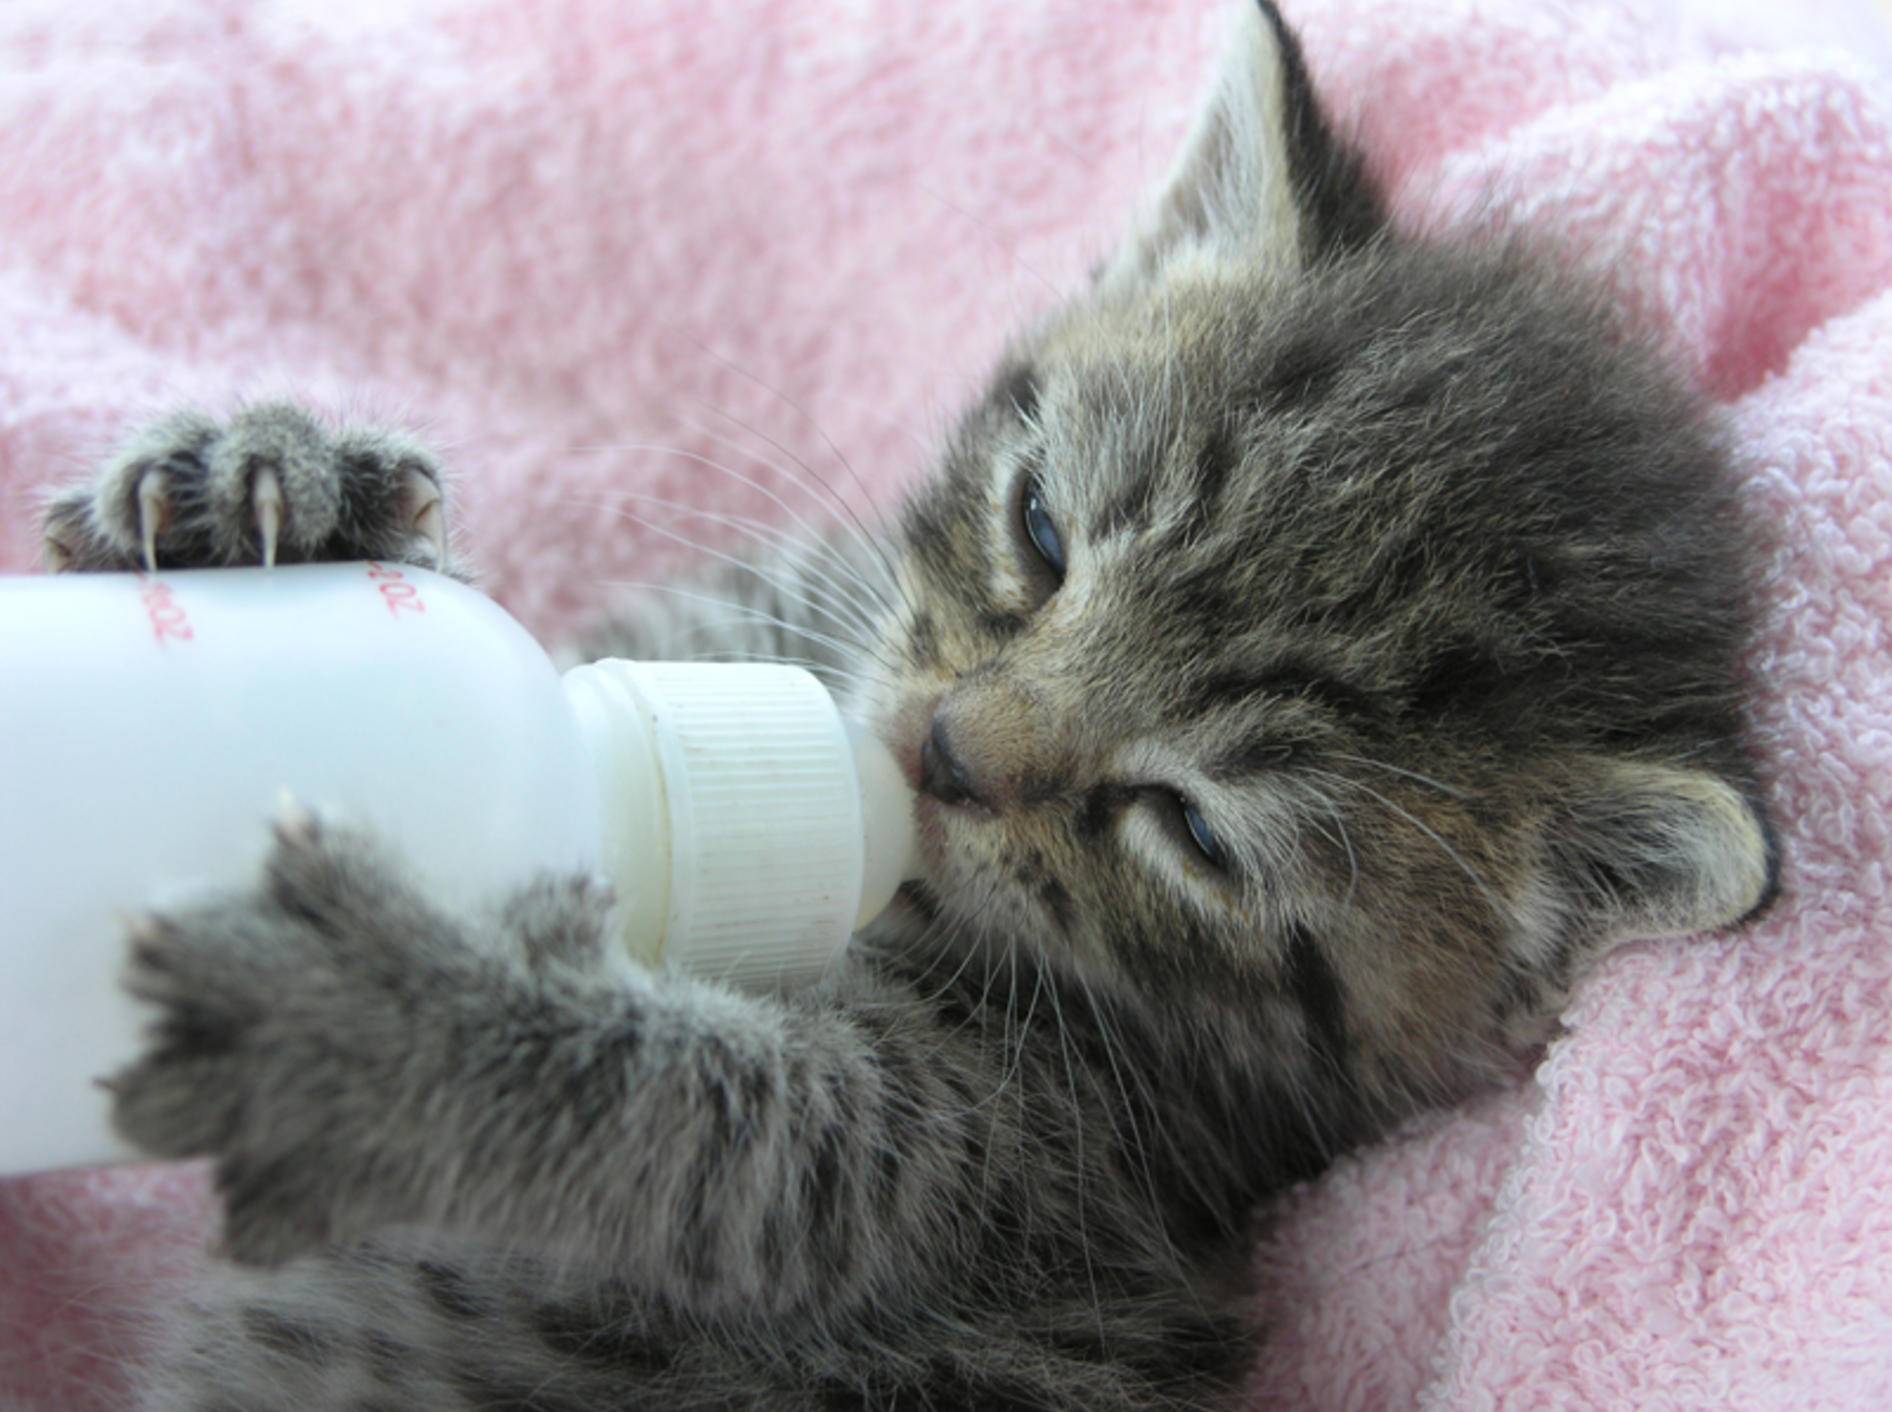 Das kleine getigerte Kätzchen kann seine Flasche schon ganz alleine halten! – Bild: Shutterstock / Margo Harrison